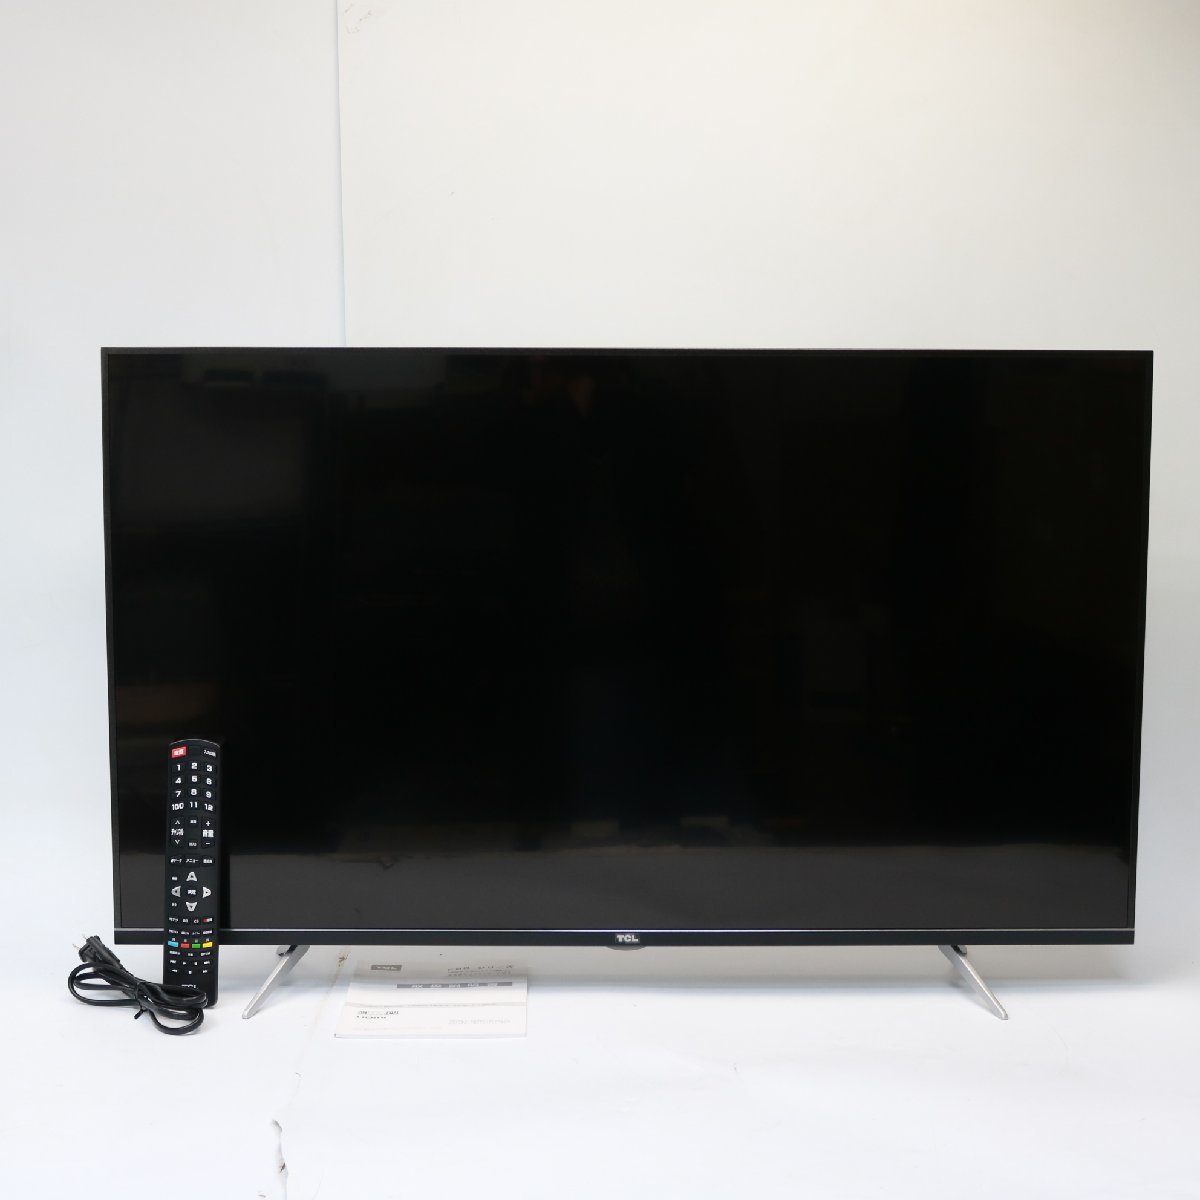 東京都板橋区にて TCL 液晶カラーテレビ 43K601U 2019年製 を出張買取させて頂きました。